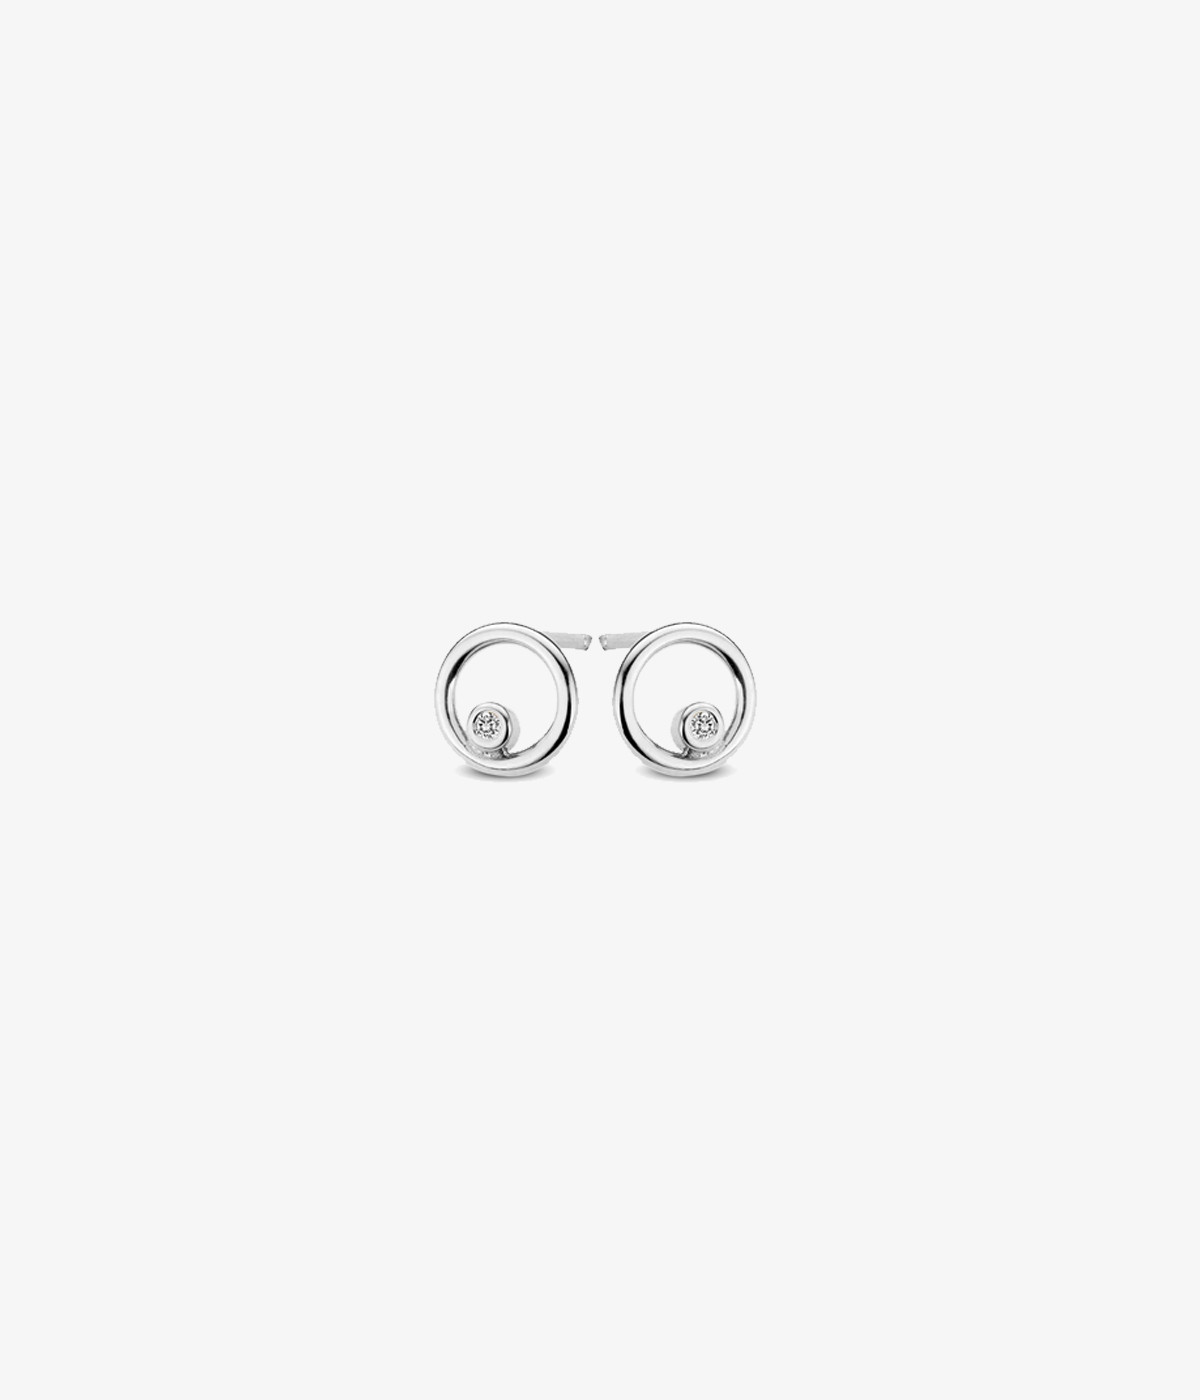 INFINITY earrings